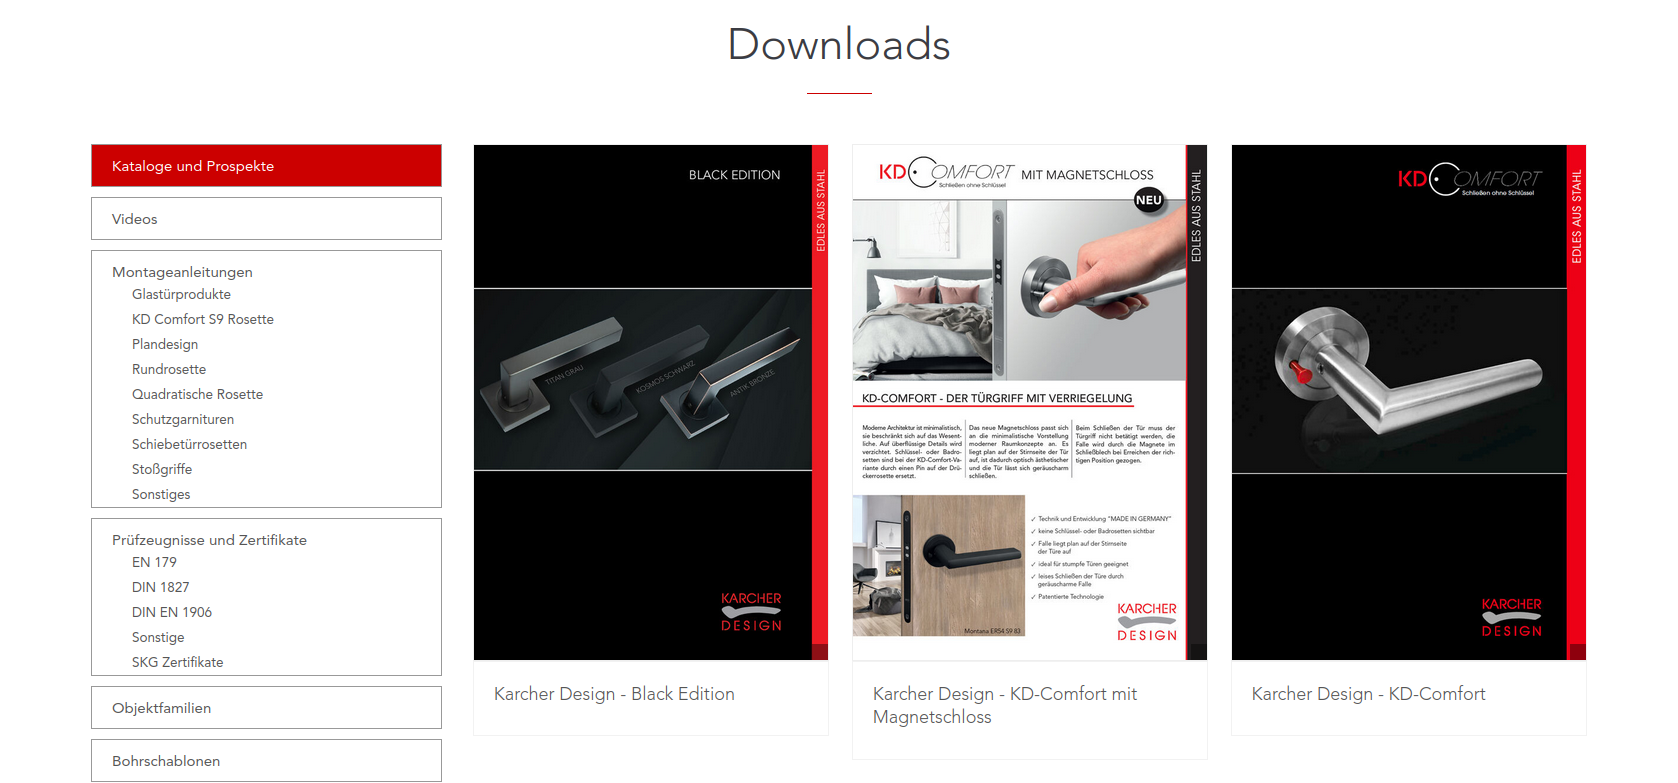 Karcher Design - Architekten weltweit verplanen Karcher Produkte